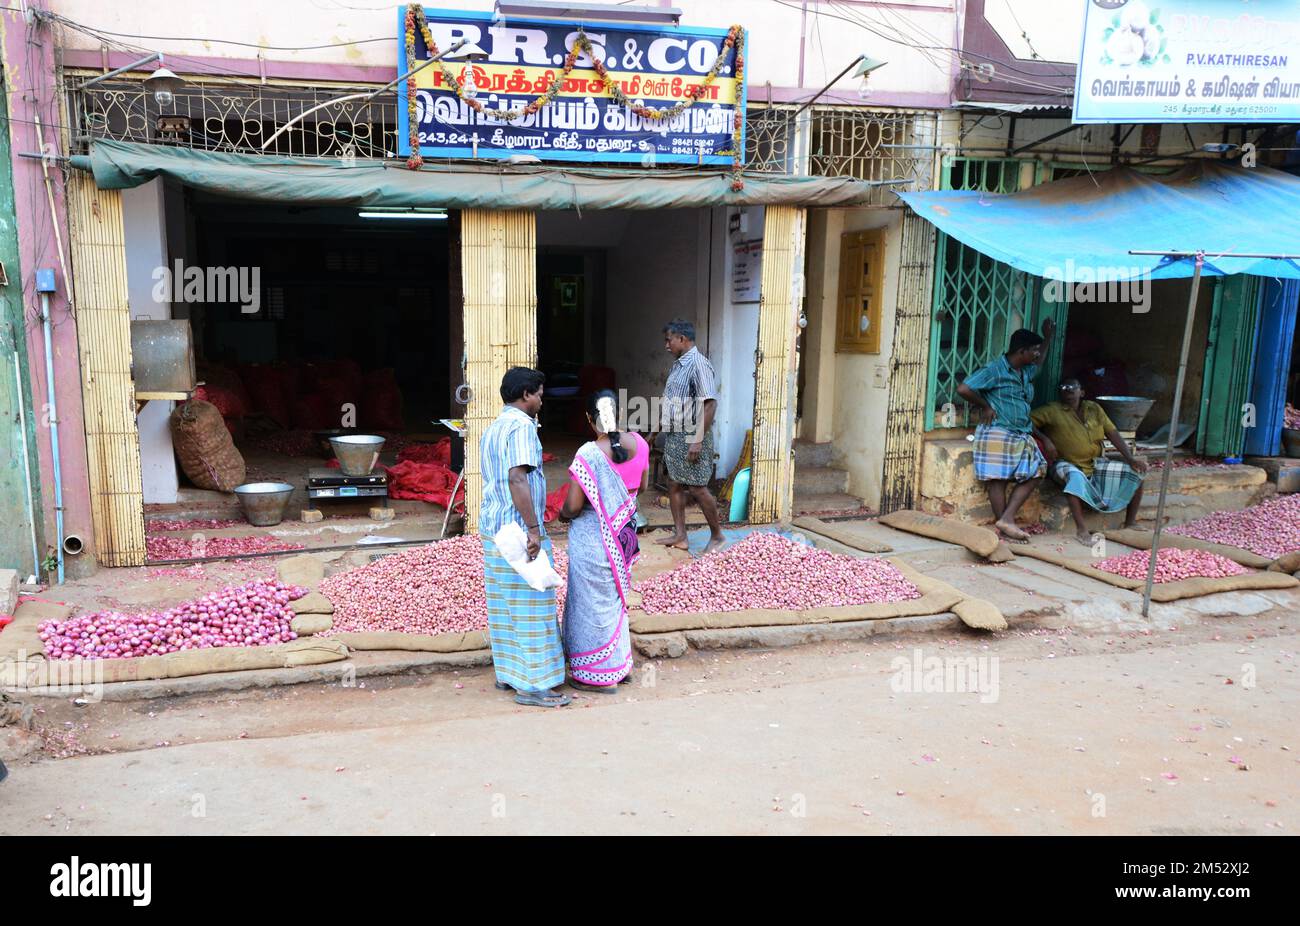 An Onion vendor in the market in Madurai, India. Stock Photo